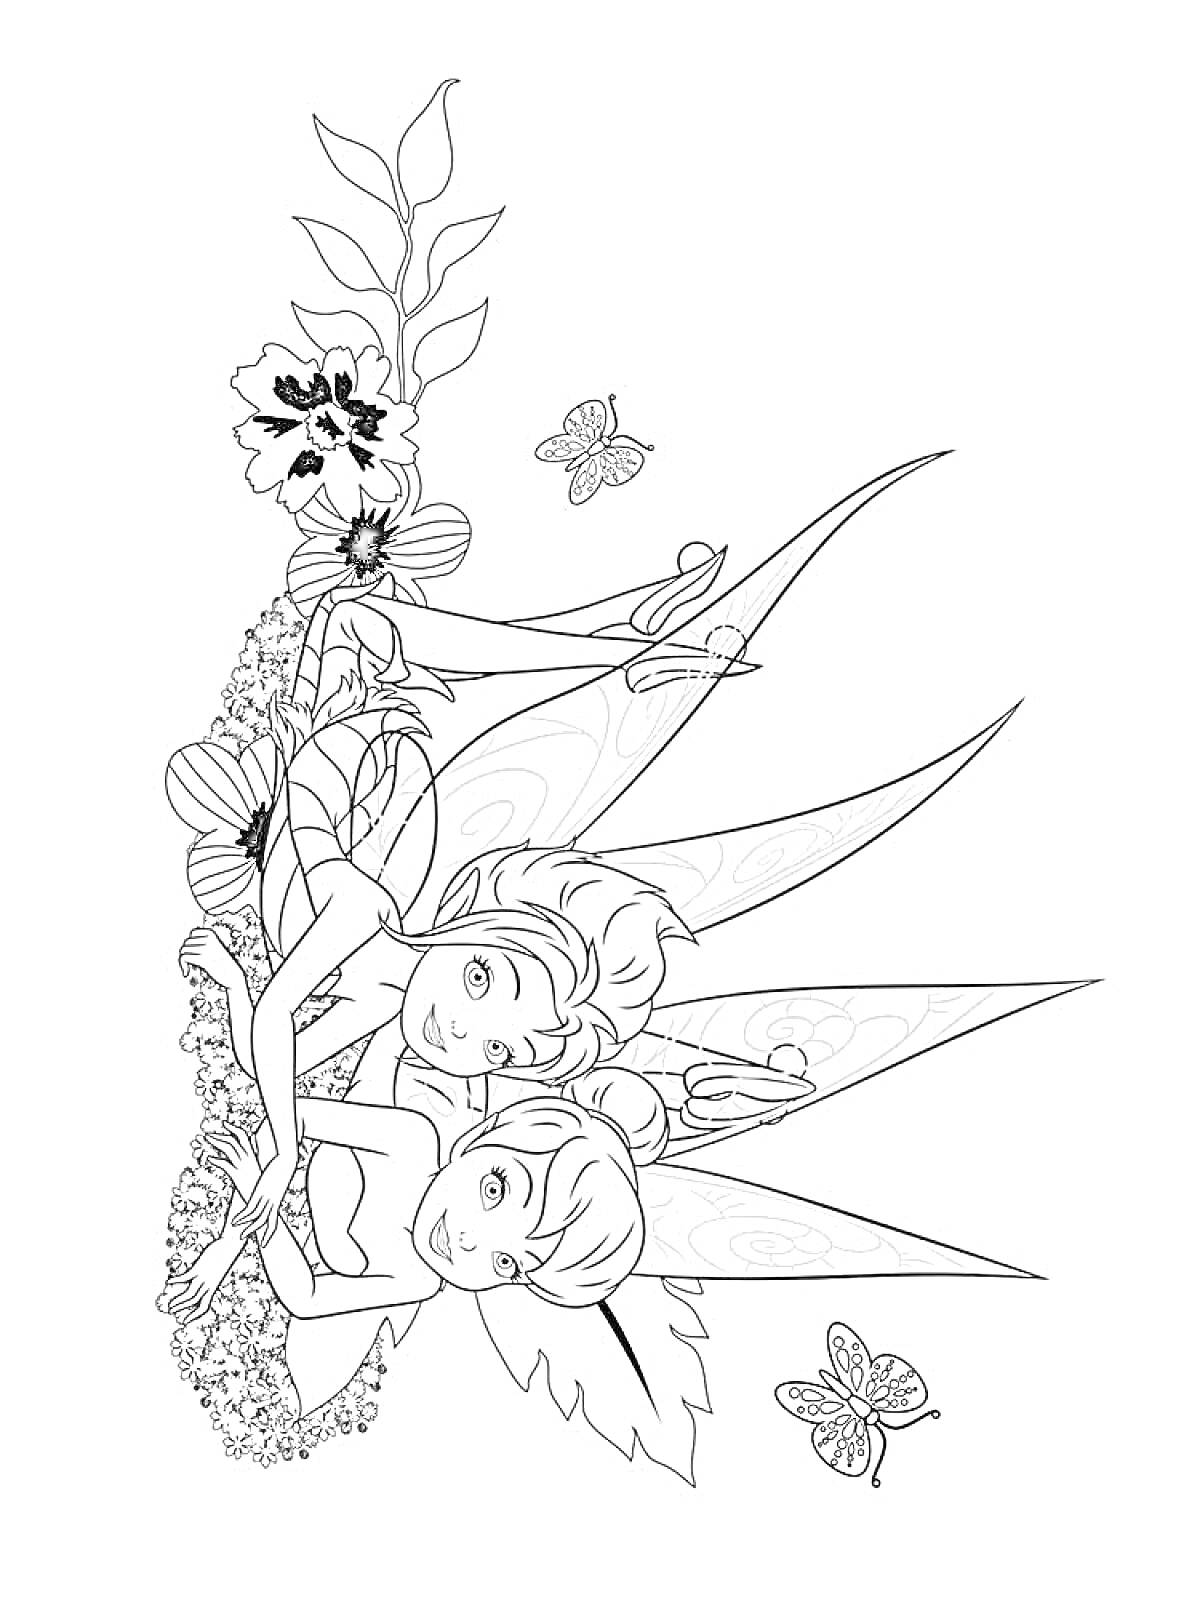 Раскраска Феи Динь-Динь среди цветов и бабочек